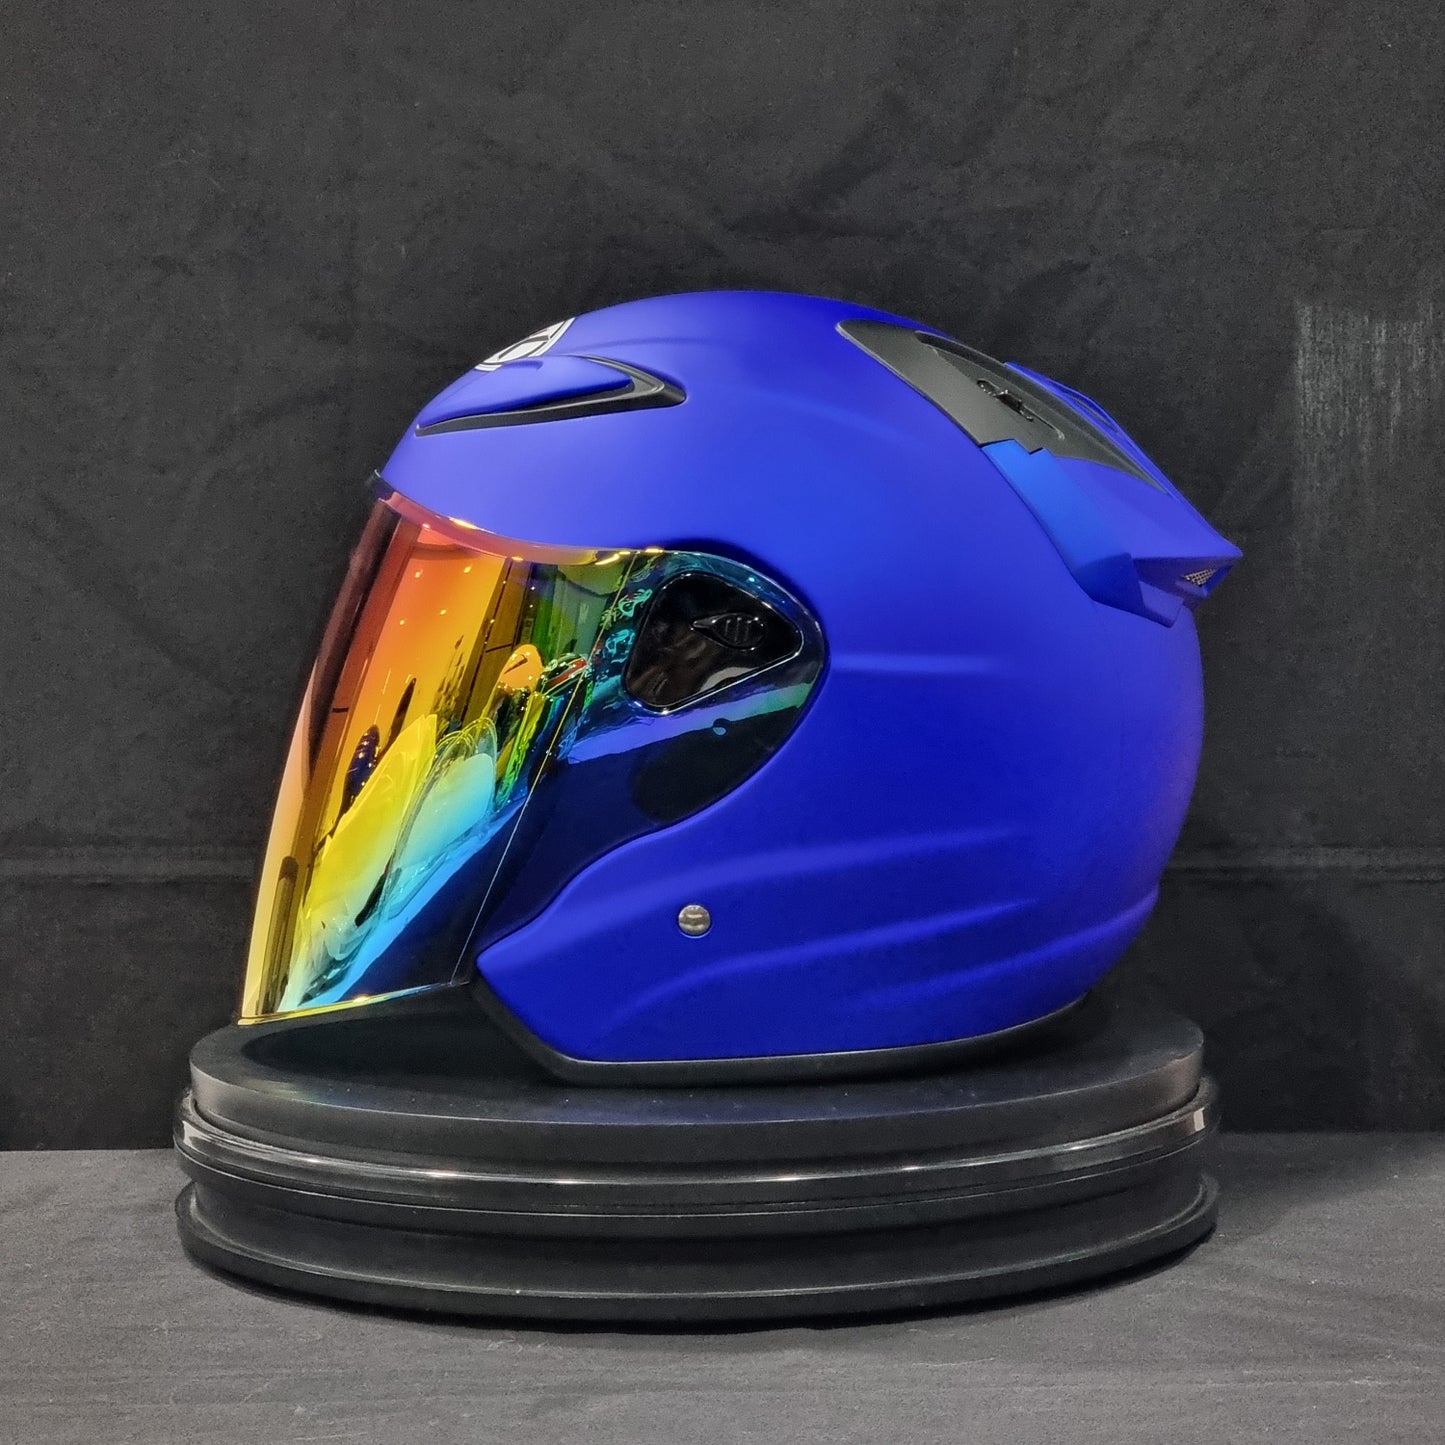 NHK Helmet R6 v2 Solid (Candy Blue Matt)